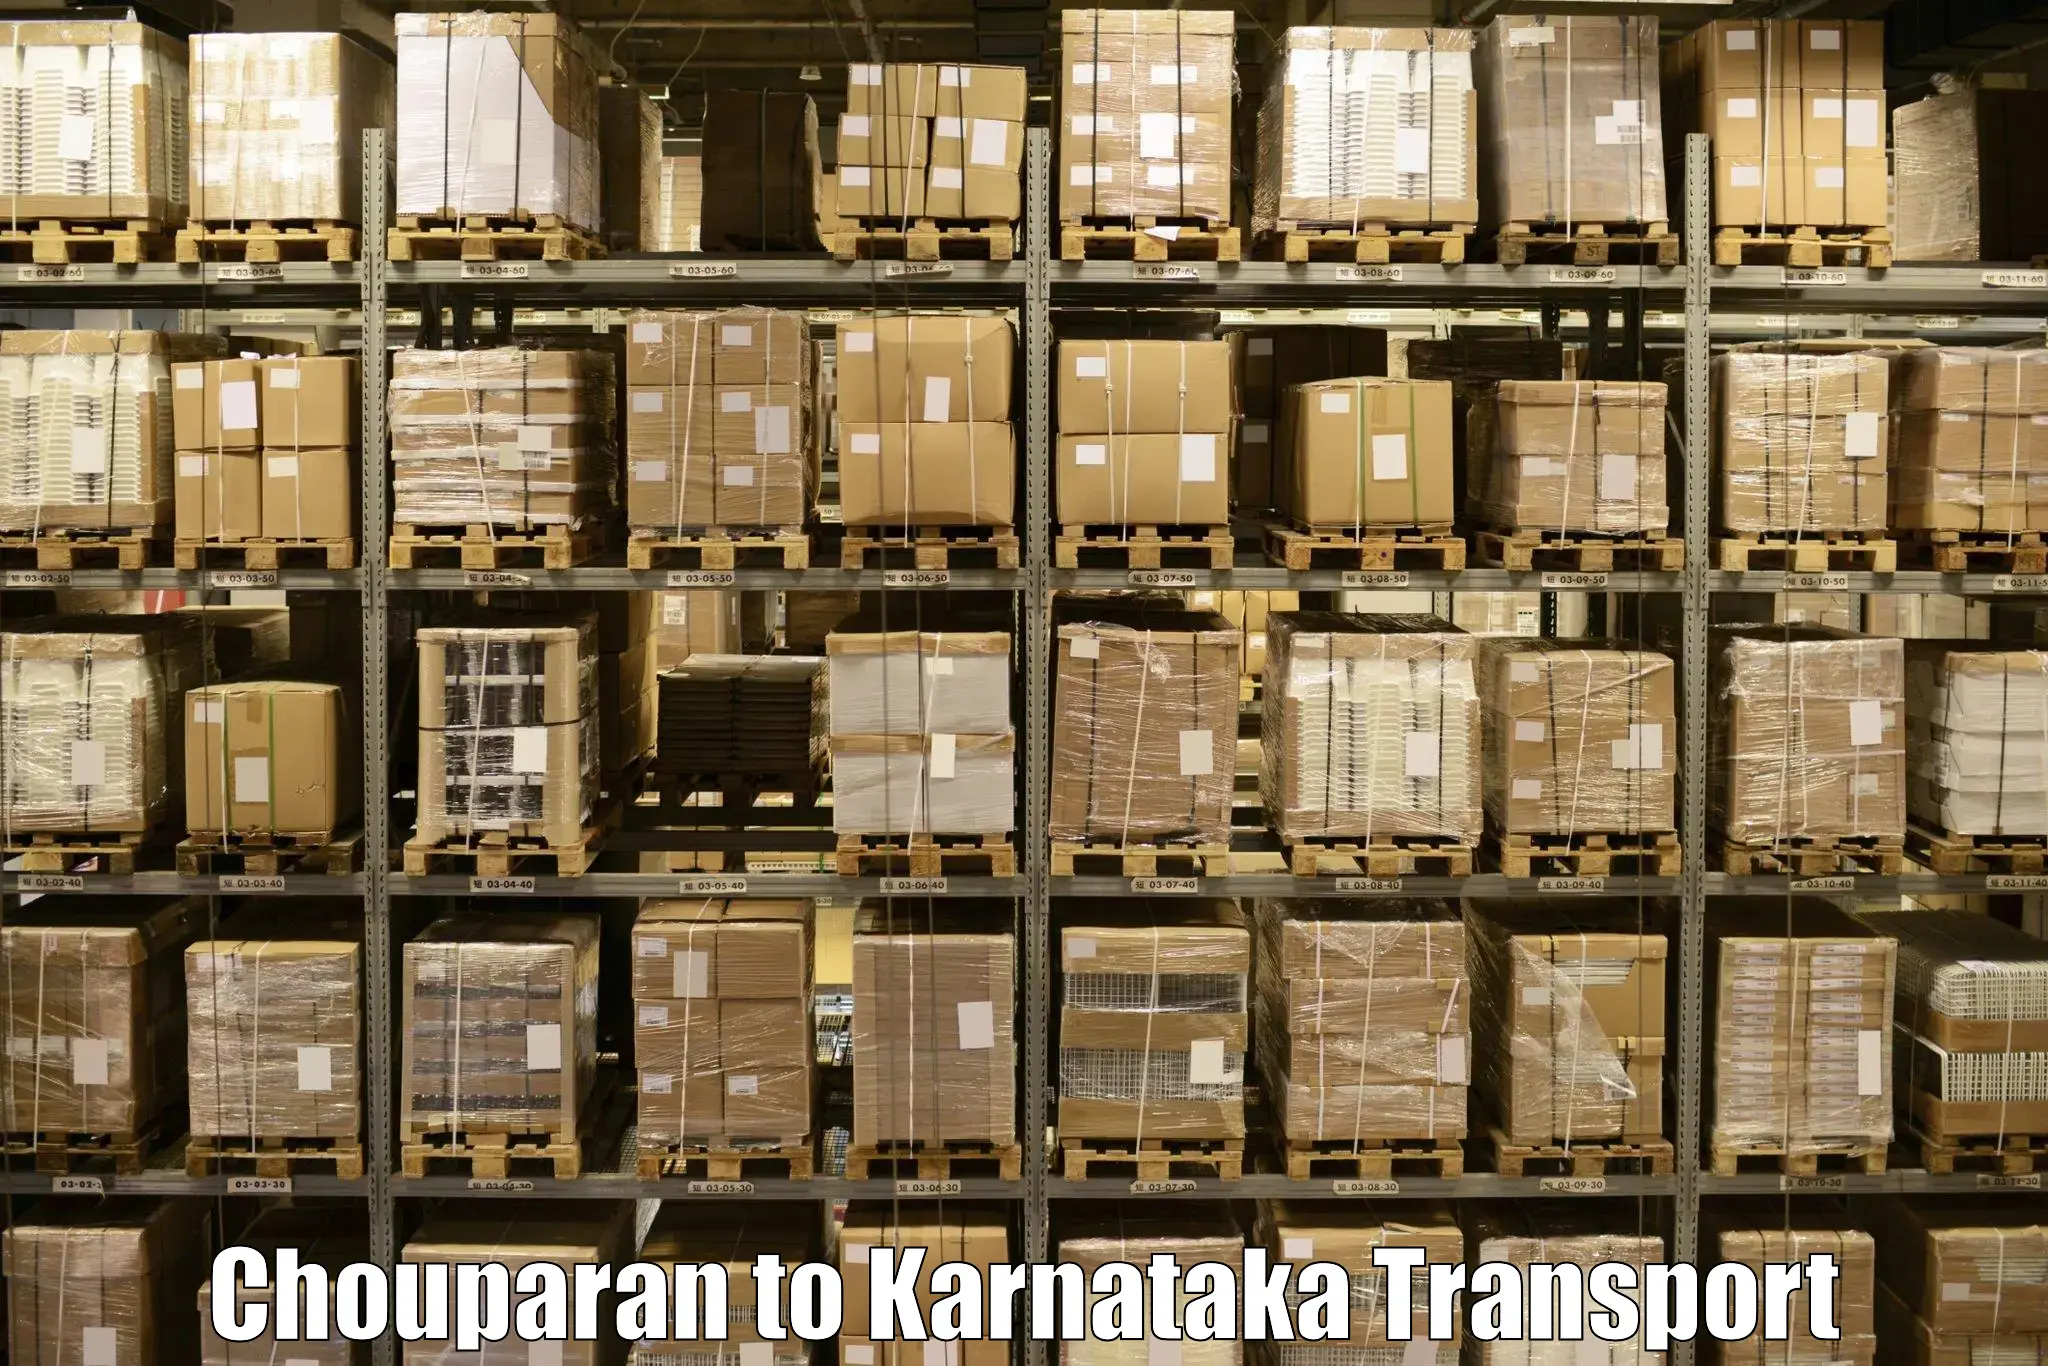 Online transport booking Chouparan to Dakshina Kannada